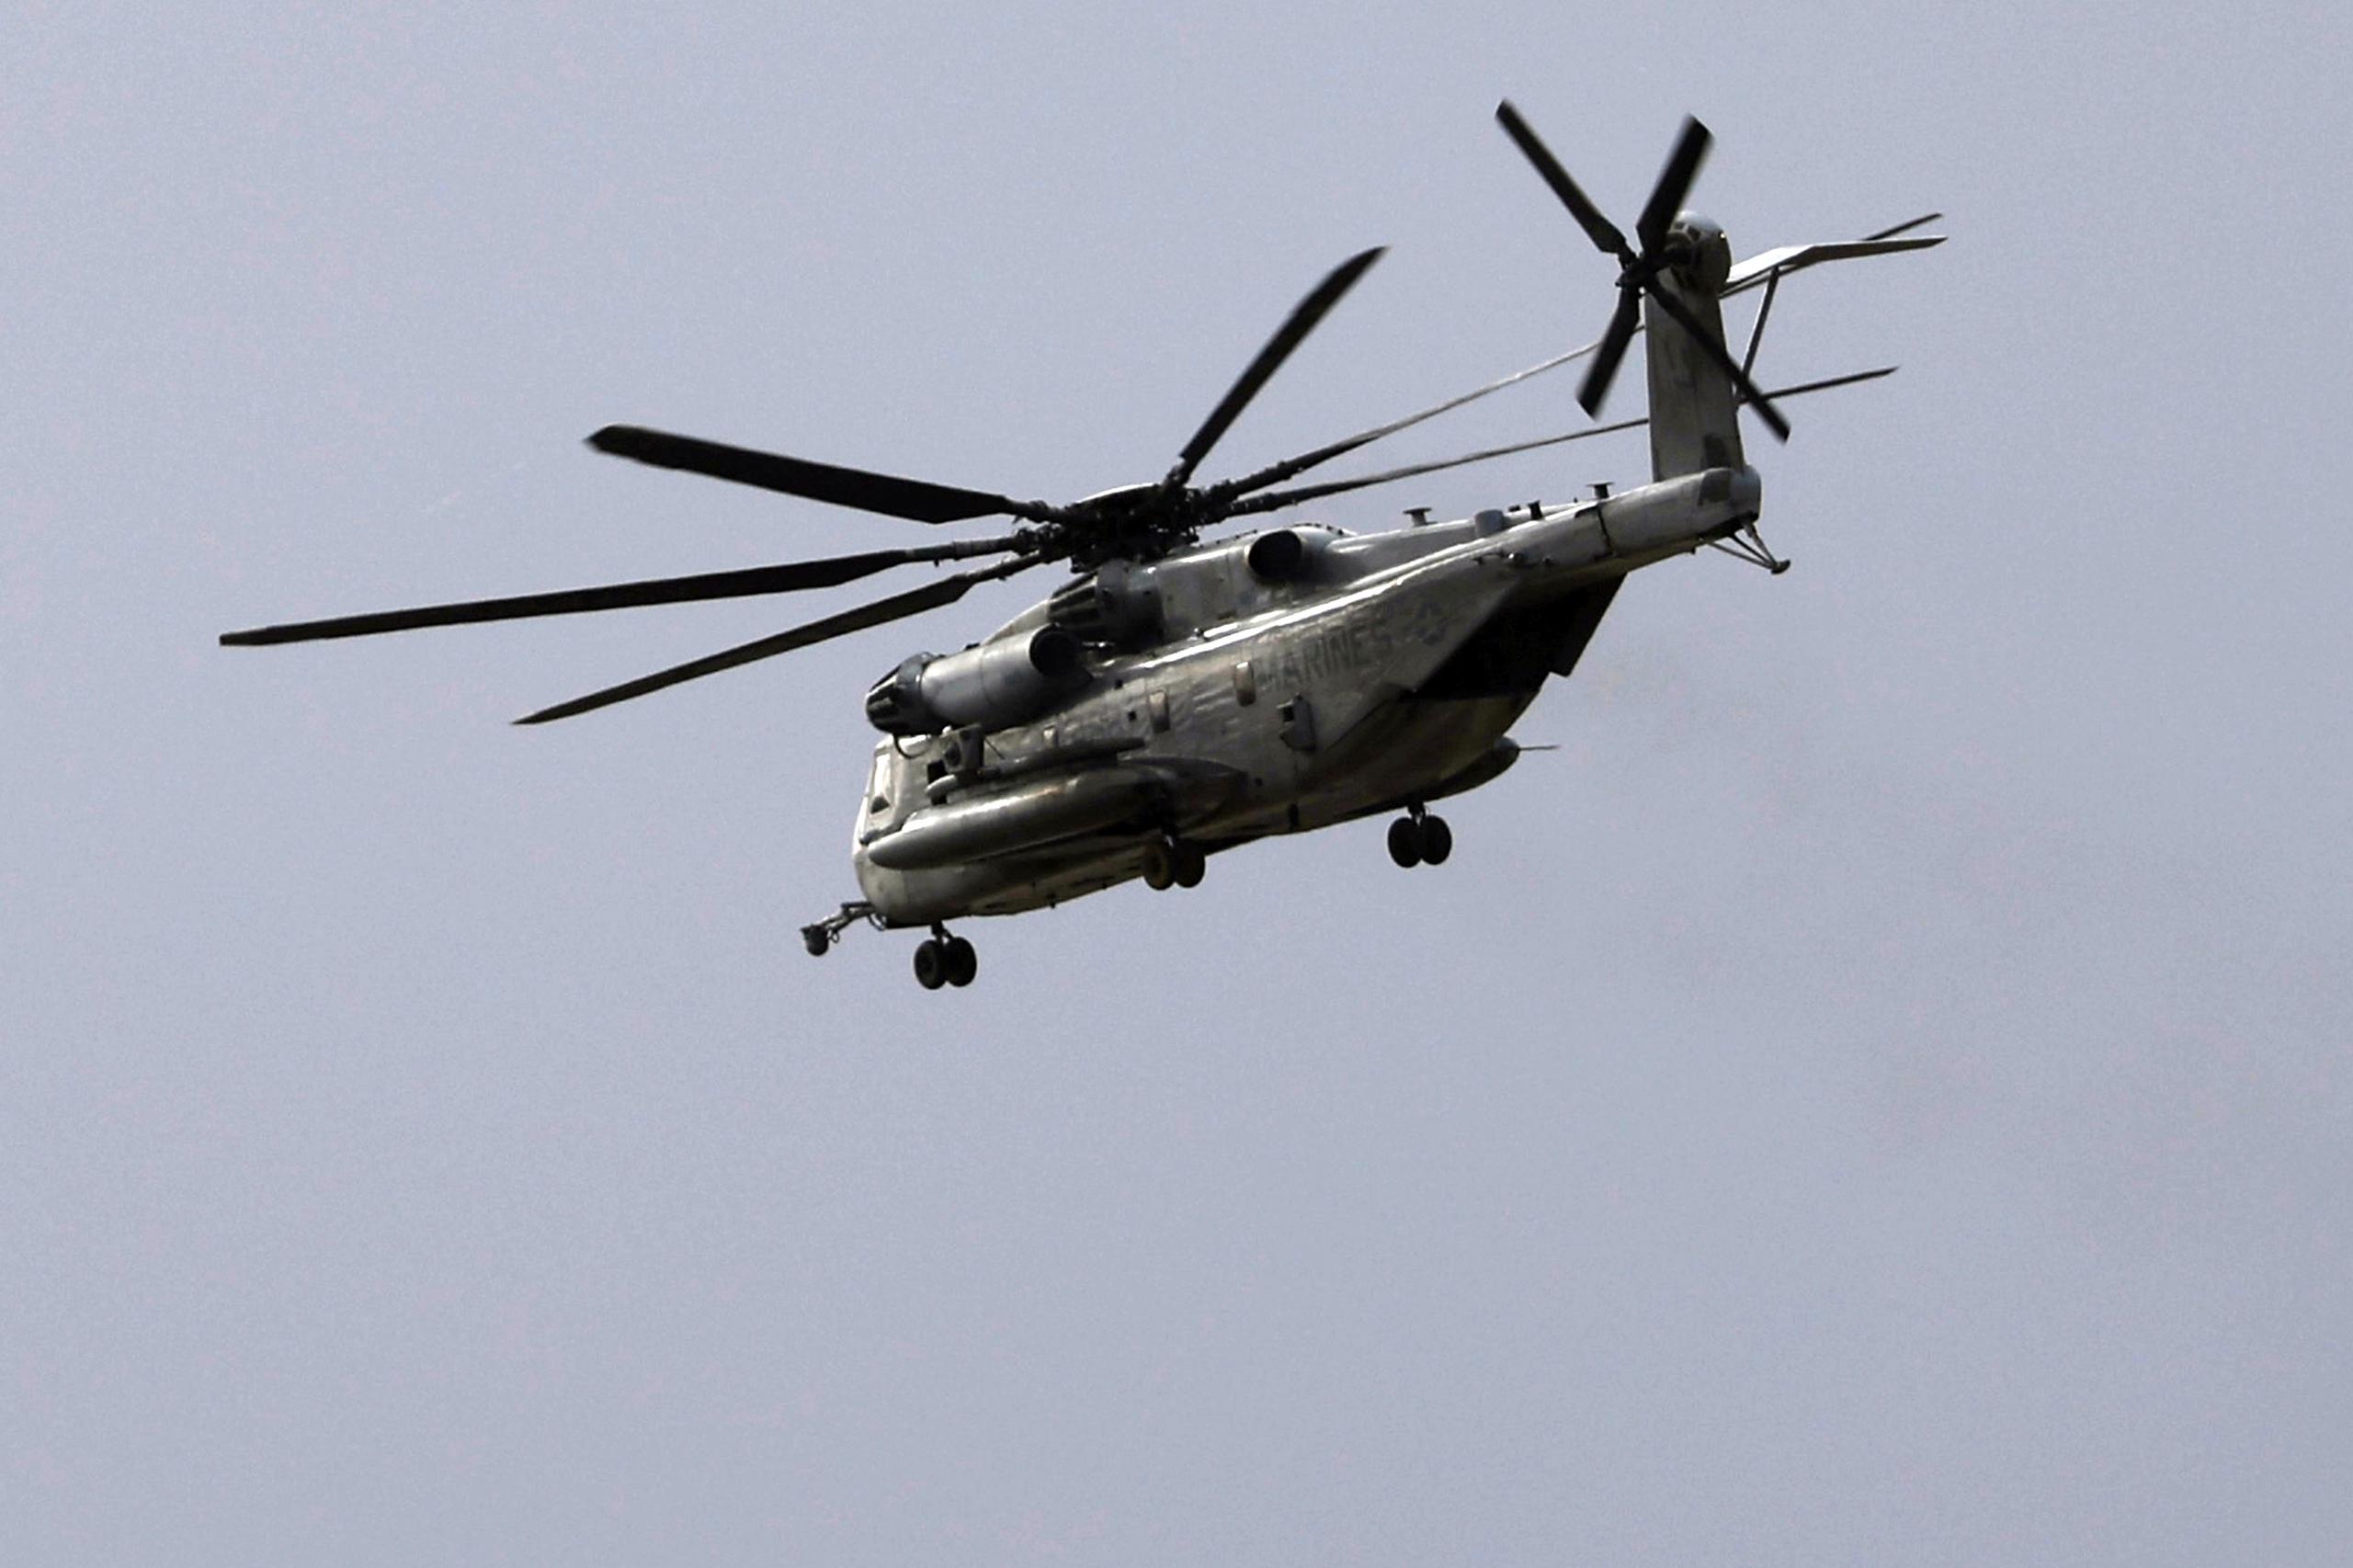 El CH-53E Super Stallion, de unos 30 metros de largo, es el helicóptero más grande y pesado del ejército.